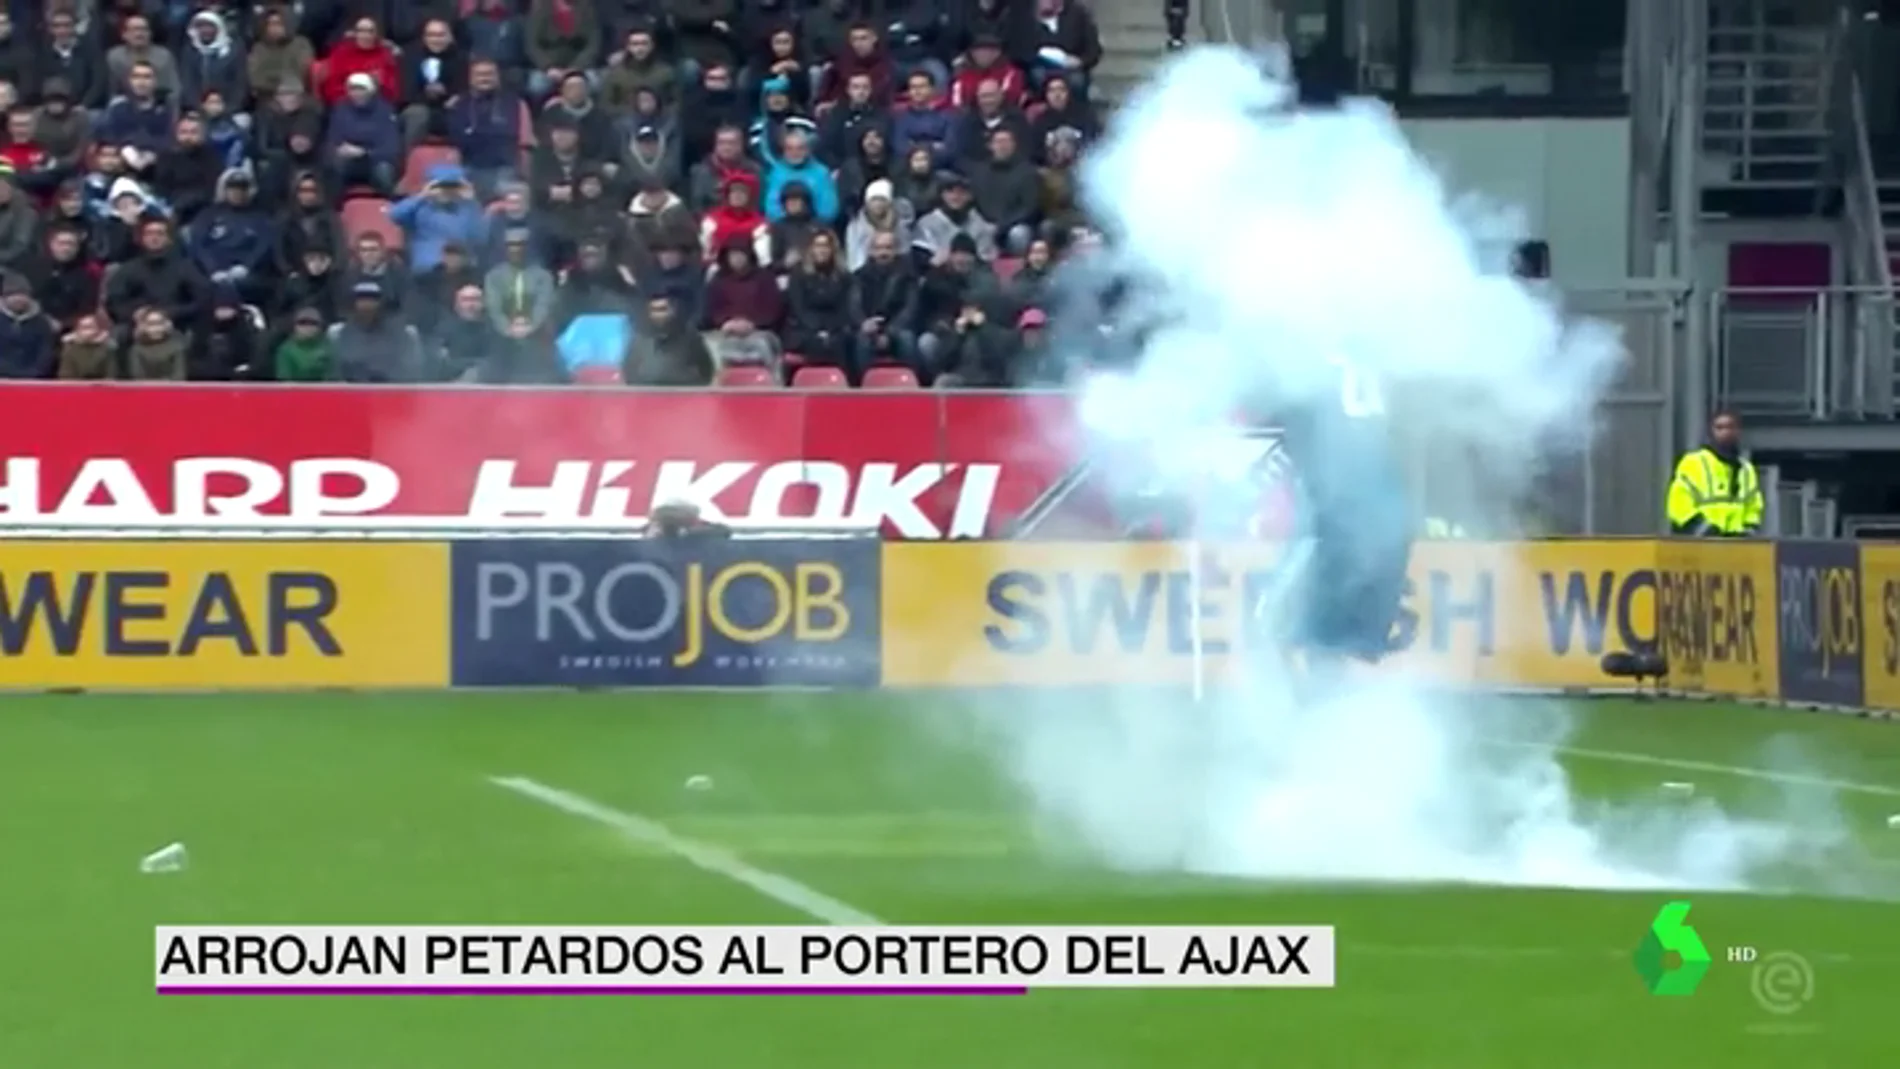 Se rozó la tragedia: los ultras del Utrech lanzaron petardos al portero del Ajax en pleno partido